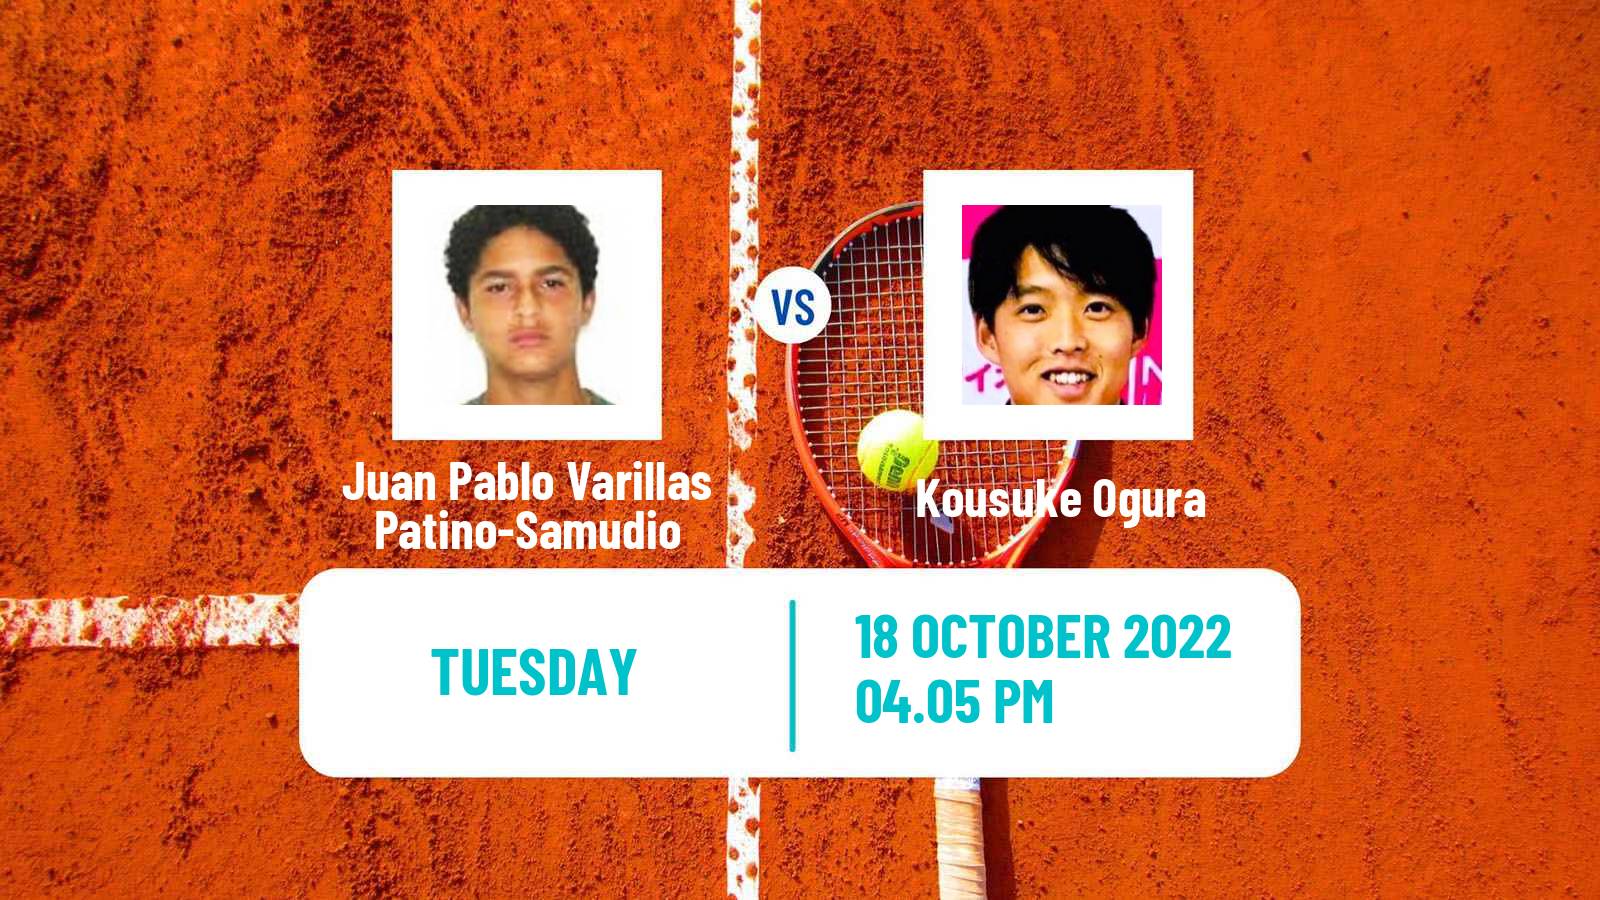 Tennis ATP Challenger Juan Pablo Varillas Patino-Samudio - Kousuke Ogura